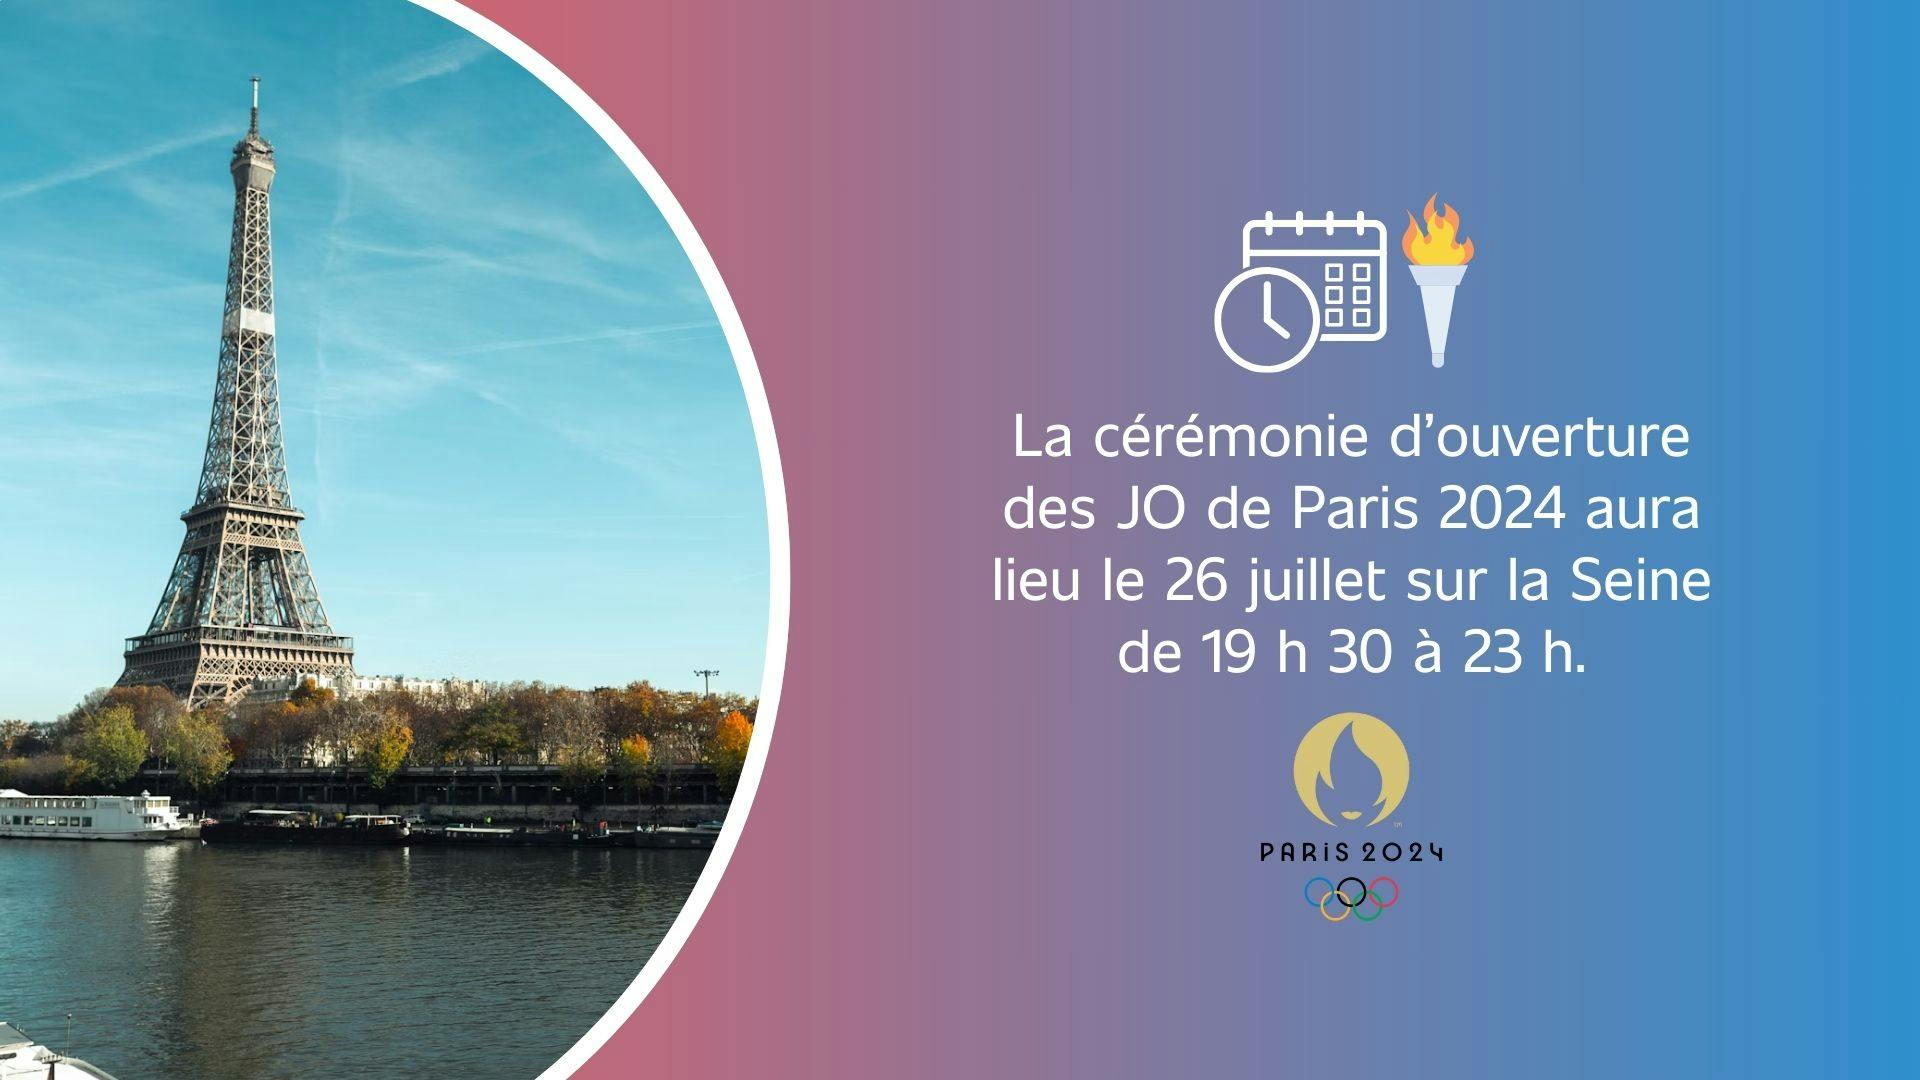 photographie de la Tour Eiffel avec un texte à droite donnant la date et l’heure de la cérémonie d’ouverture des JO de Paris 2024